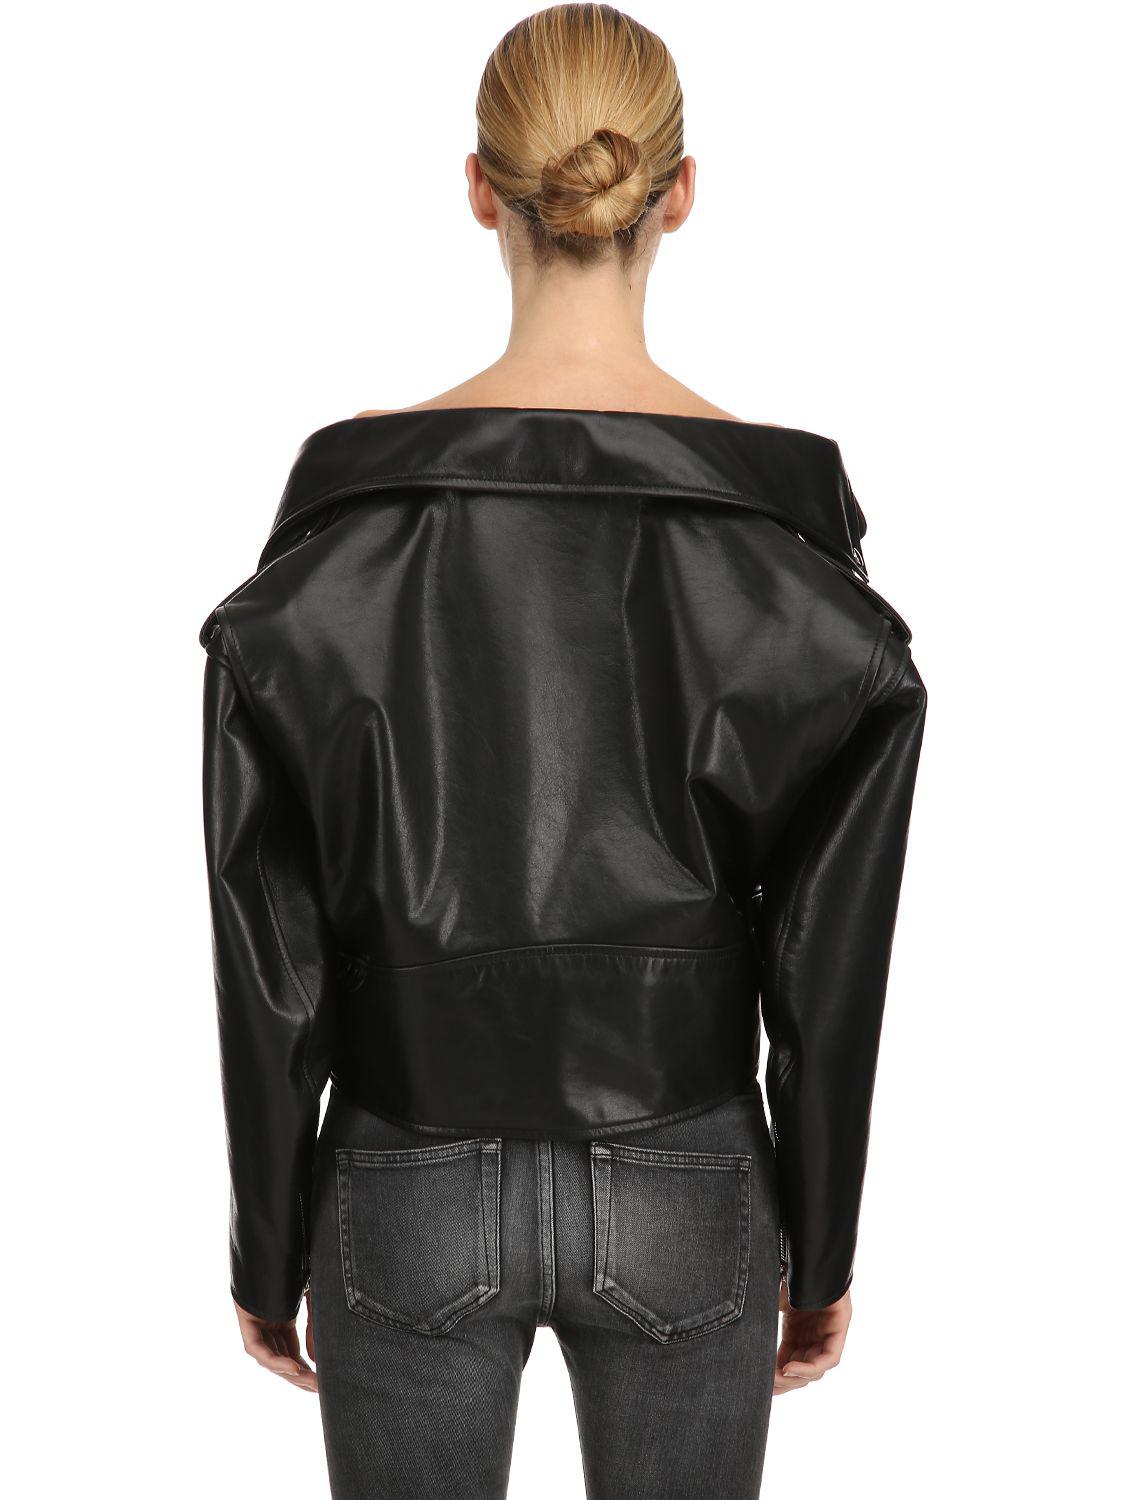 Balenciaga Swing Biker Leather Jacket in Black - Lyst